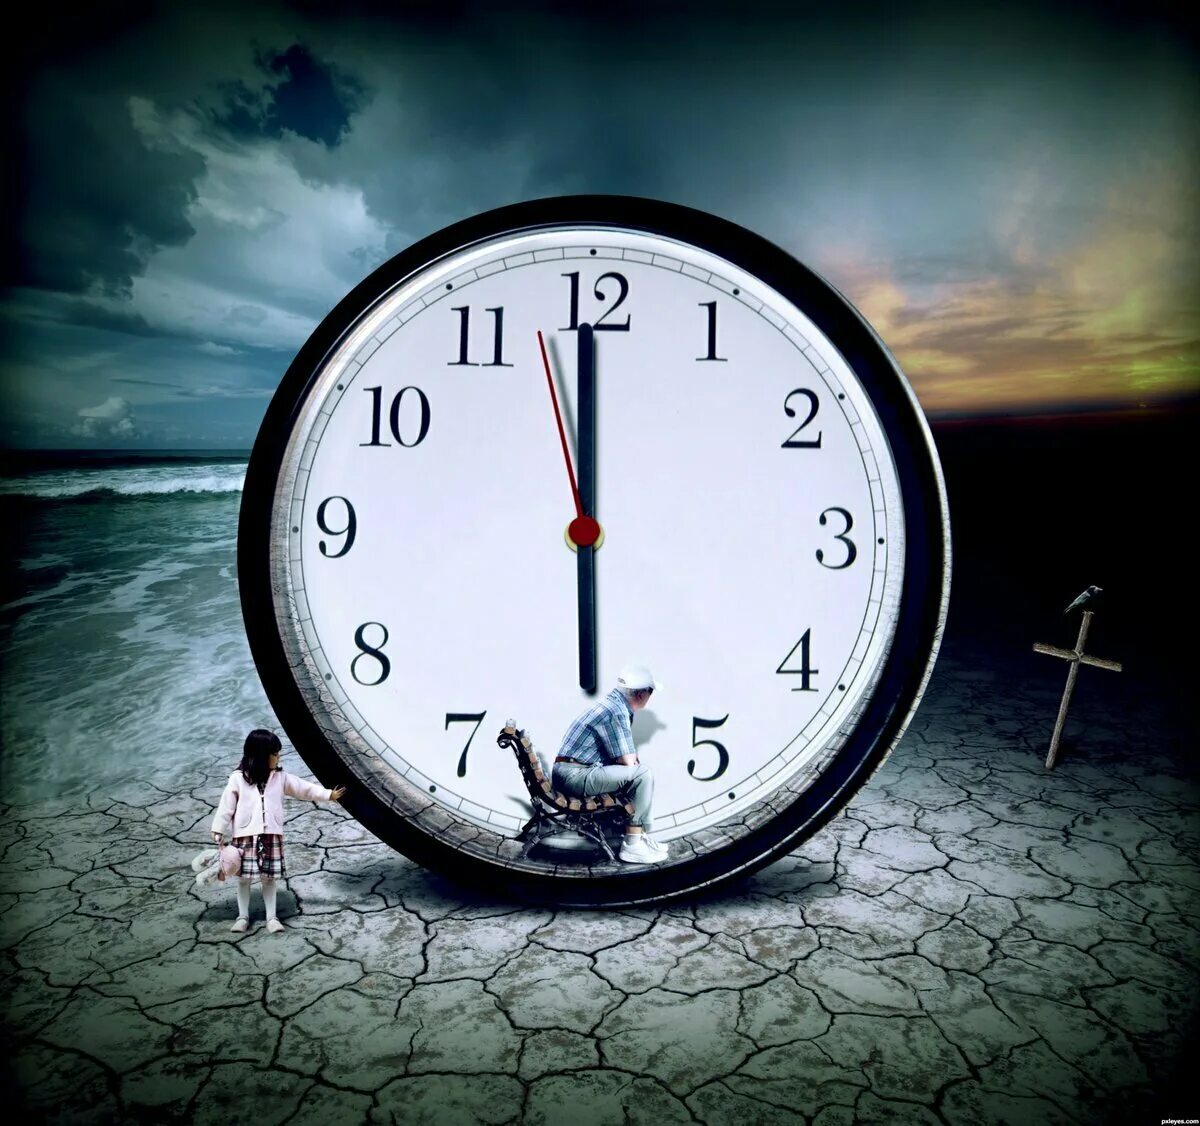 Уходим форма времени. Часы бегут. А время уходит. Изображение времени. Медленные часы.